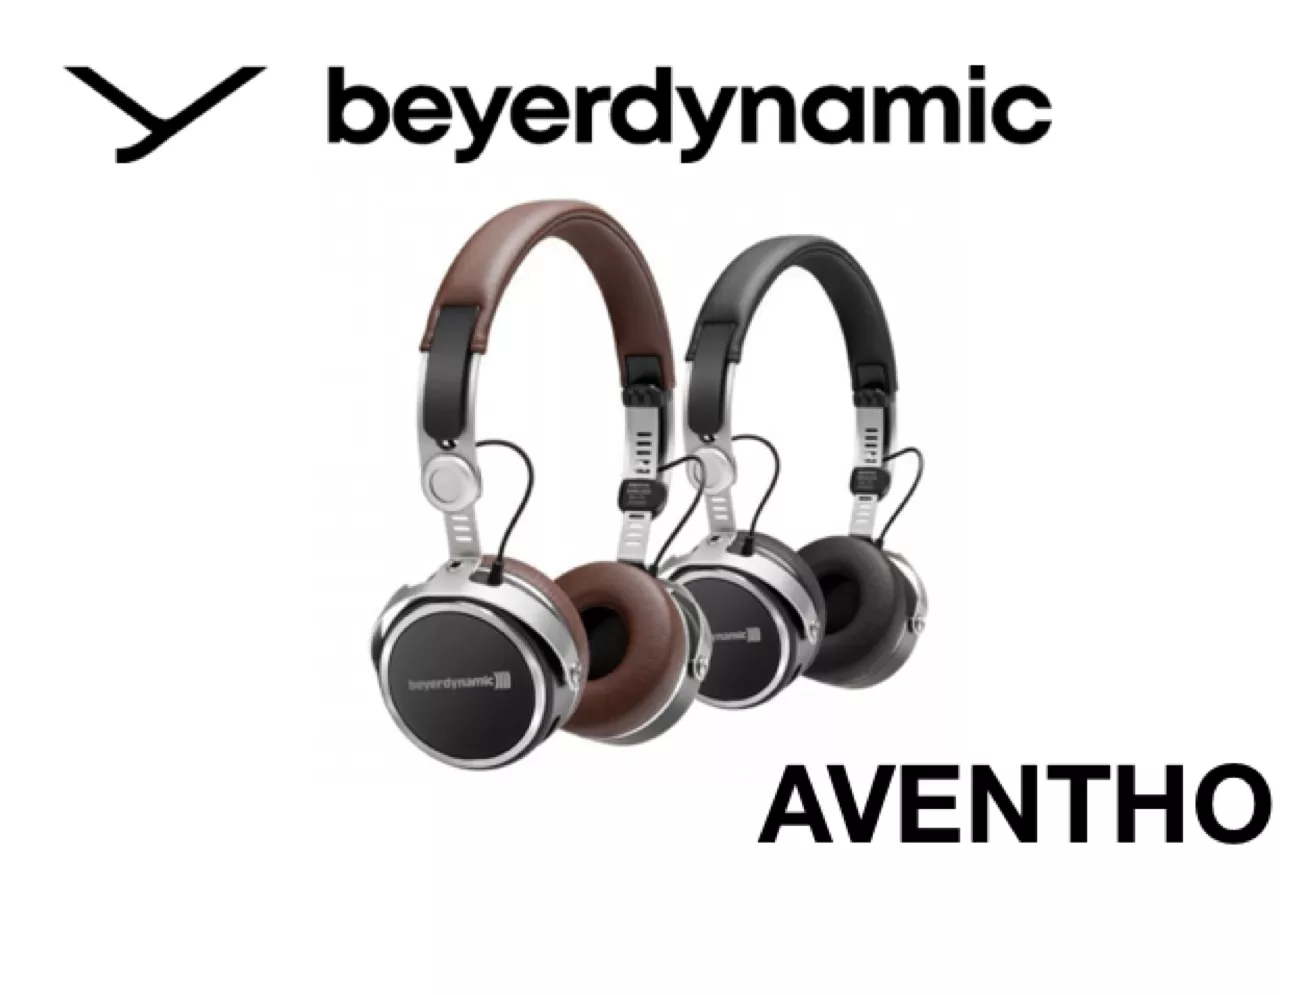 Die Logos von Aventho und  beyerdynamic mit zwei verschiedenen Ausführungen der Kopfhörer in braun und schwarz. 